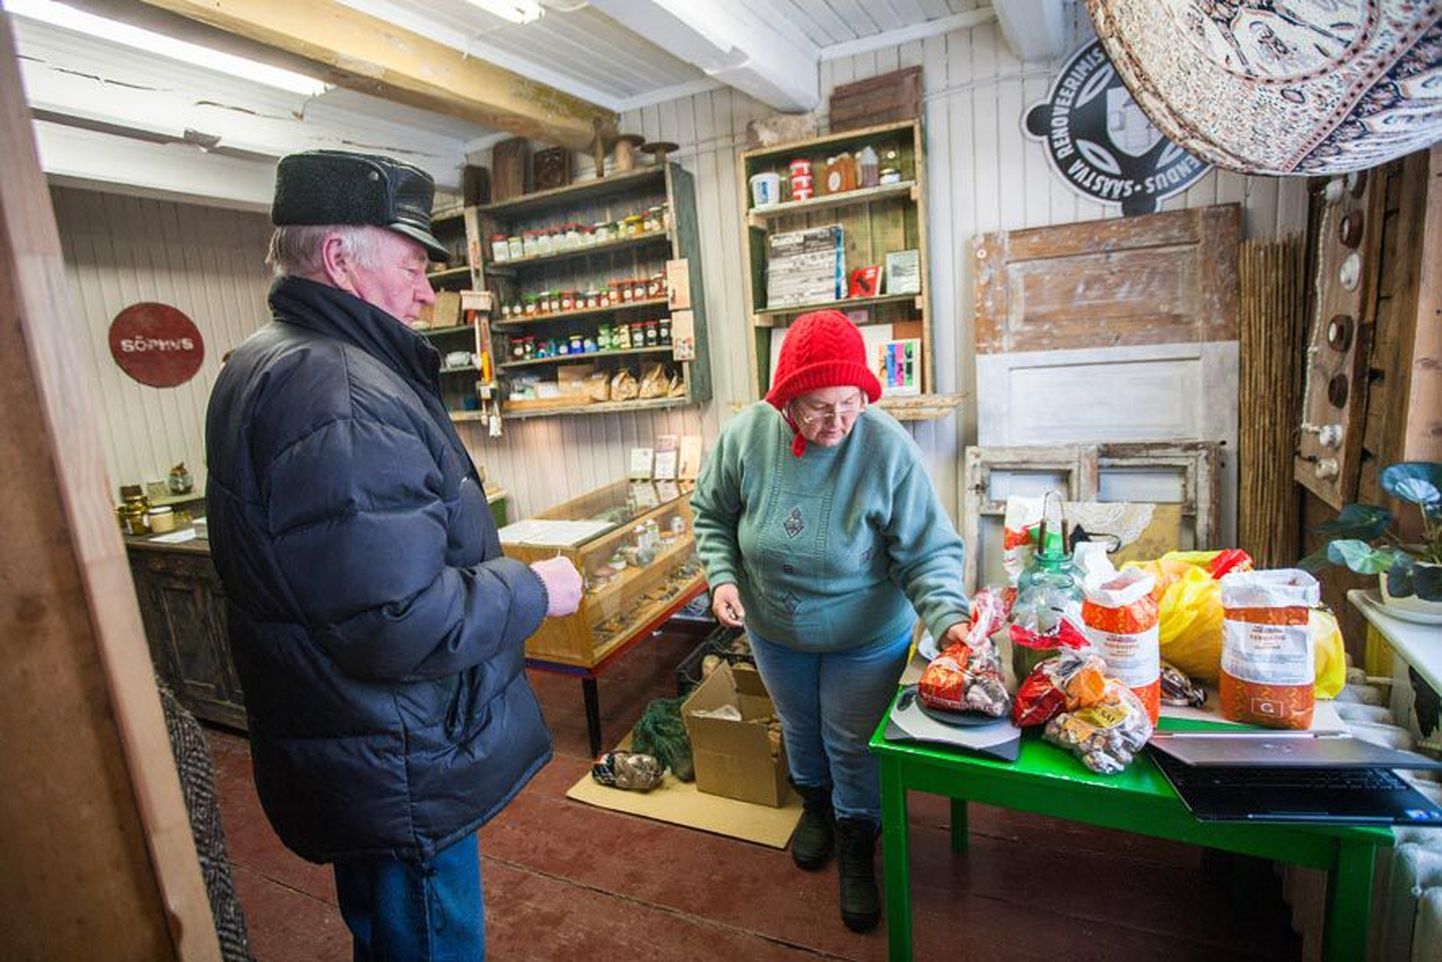 Paides Tallinna 11 majas asuvast talutoiduklubist Rätsepa talu perenaiselt Meeli Seepterilt küüslauku ostva paidelase Arvo meelest on otse tootjalt saadud kaup ikka etem kui poest ostes.